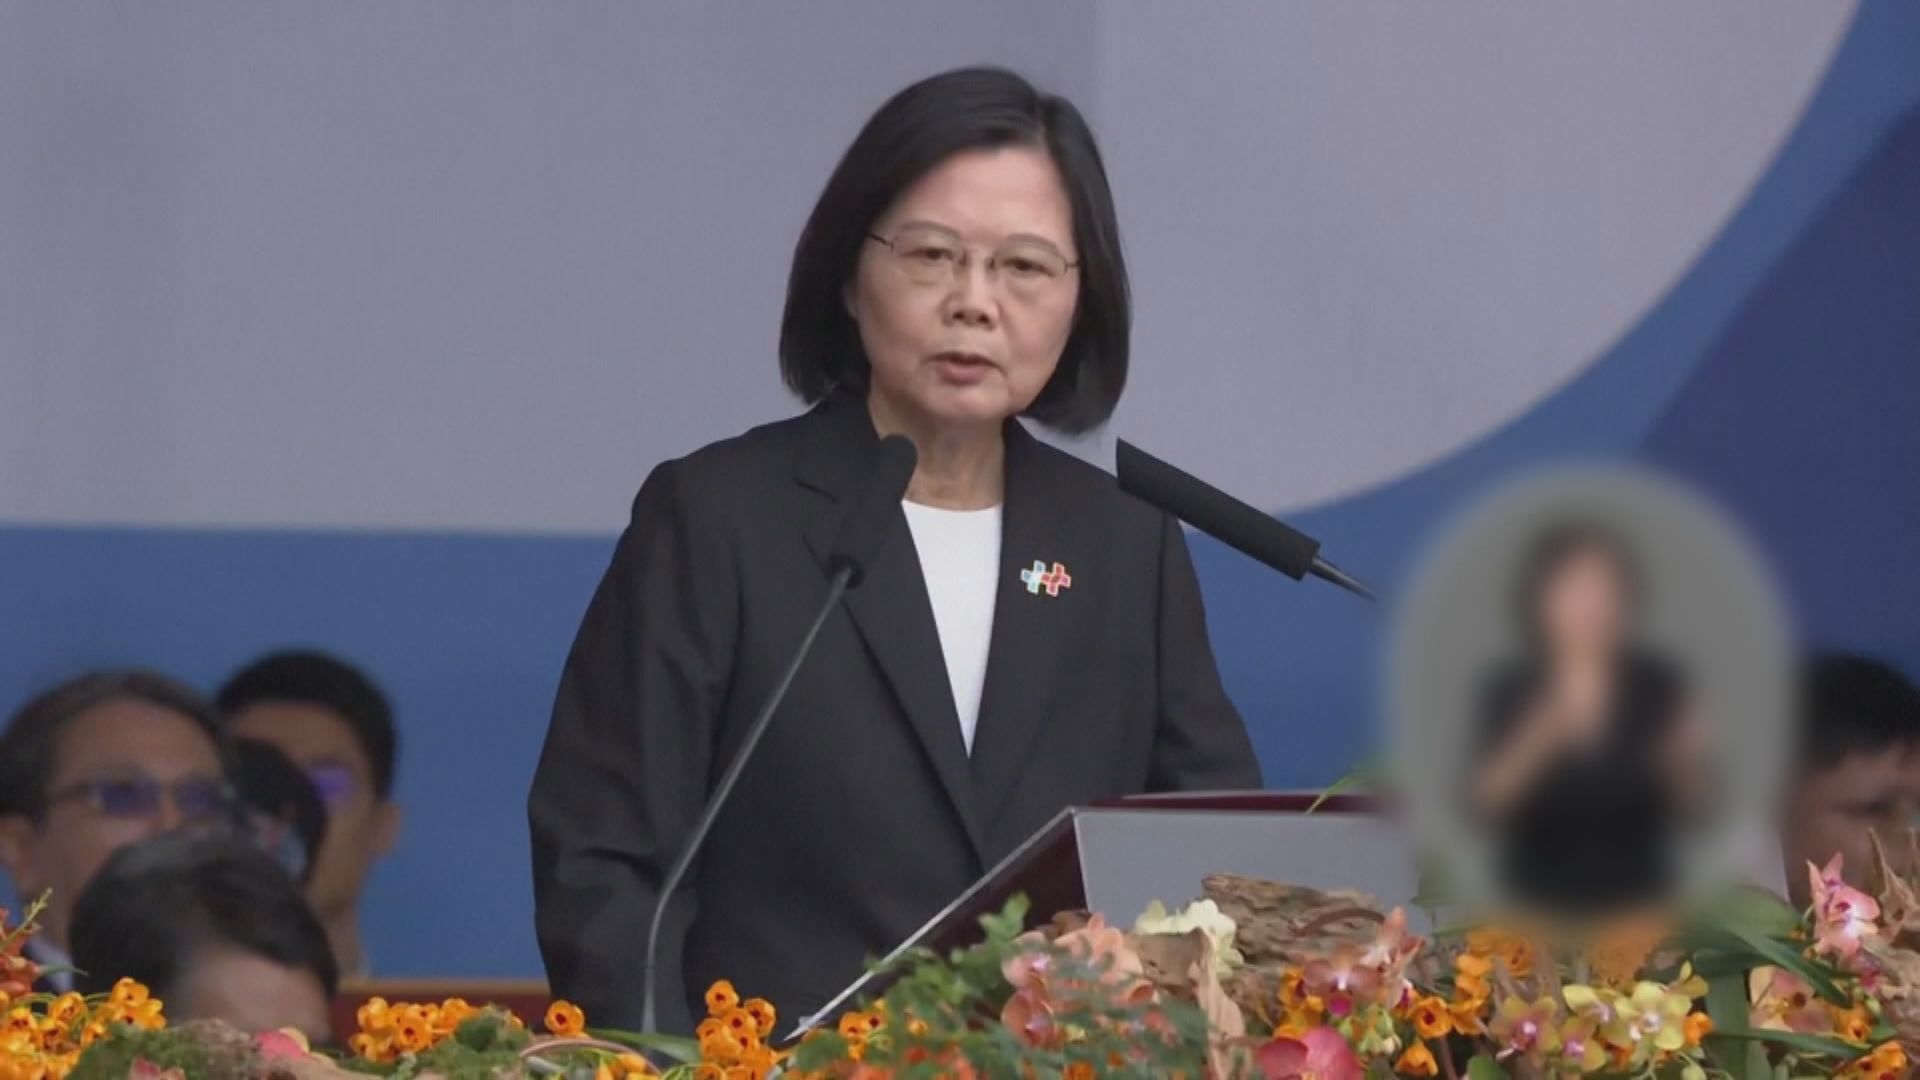 台灣慶祝雙十節 蔡英文籲建和平穩定的兩岸關係